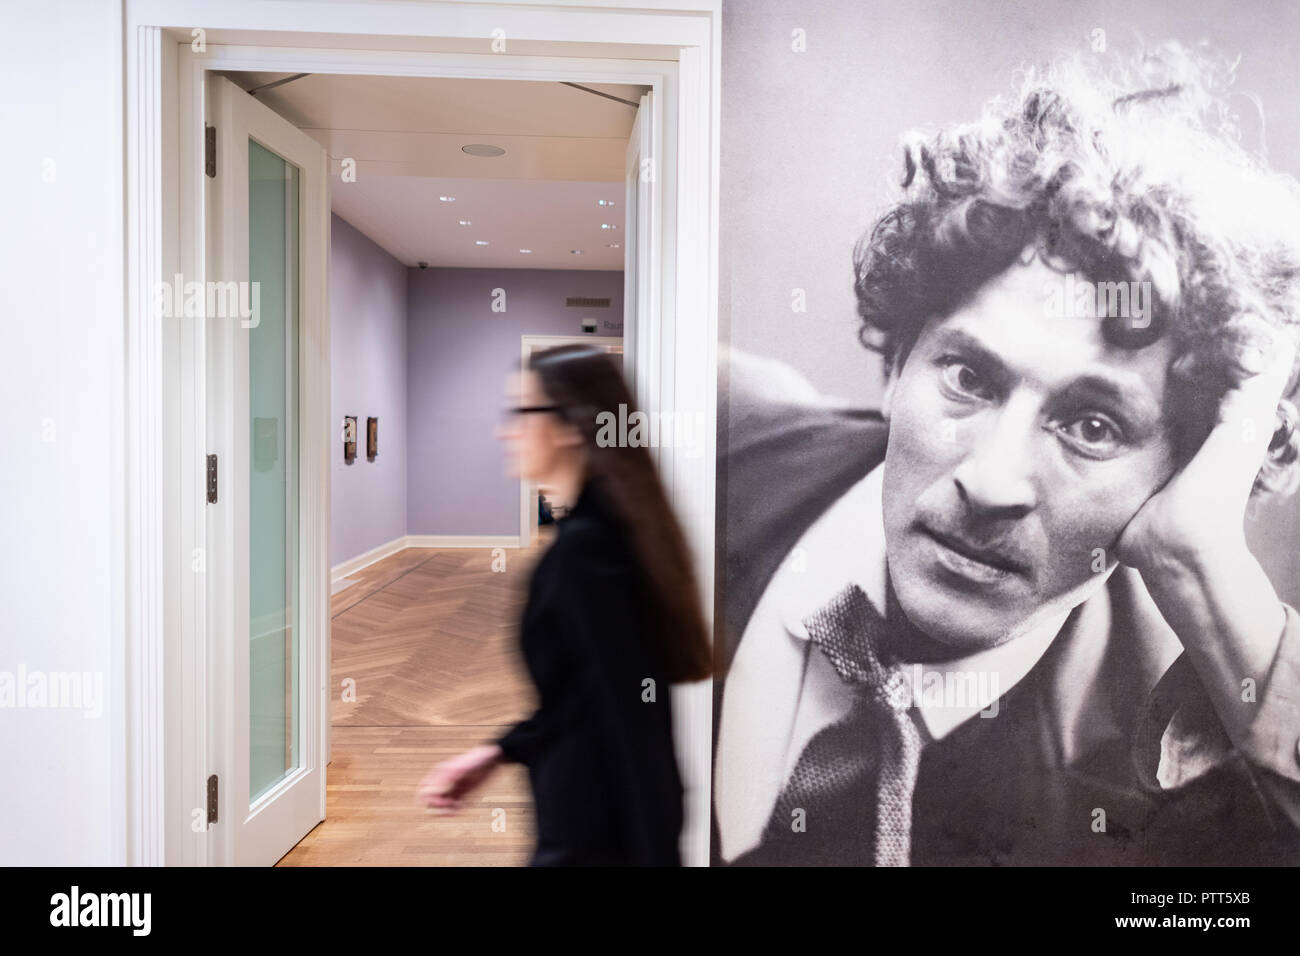 10 Oktober 2018, Nordrhein-Westfalen, Münster: 10. Oktober 2018, Deutschland, Münster: eine Frau in der Pablo Picasso Museum Pass ein Porträt von Marc Chagall und seine Ausstellung "Die Träumer" Wach. Rund 120 Werke von Marc Chagall können von diesem Samstag an in der Ausstellung 'Der wache Traeumer' in Münster zu sehen. An der Pablo Picasso Museum, das sich die Besucher in den "fantastischen Traum Welt" eintauchen konnte, das Museum hat auf eine einleitende Präsentation am Mittwoch. Unter den Gemälden, farbigen Zeichnungen und farbigen Grafiken sind auch Kredite aus dem renommierten Centre Pompidou i Stockfoto